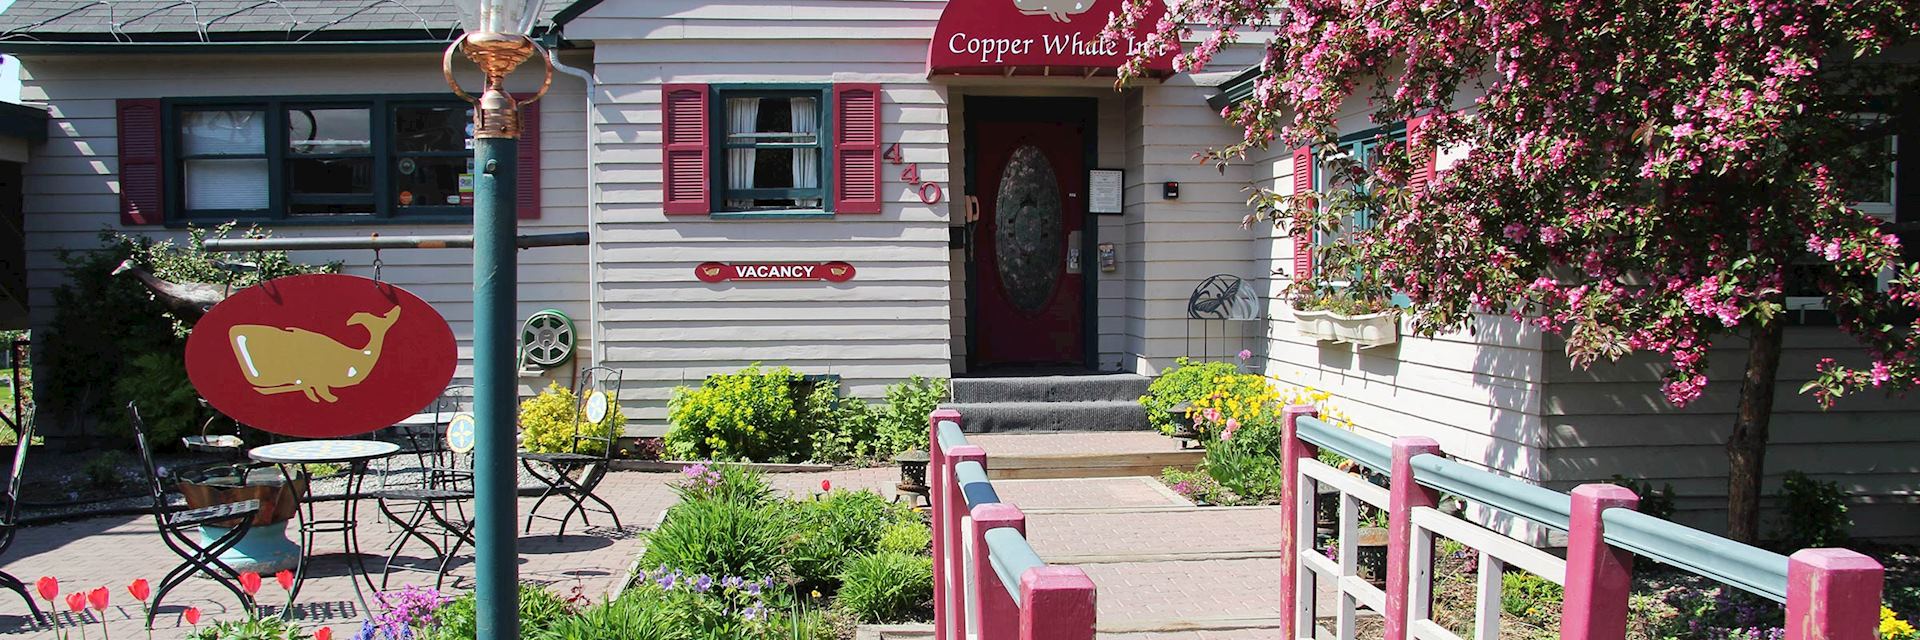 Copper Whale Inn